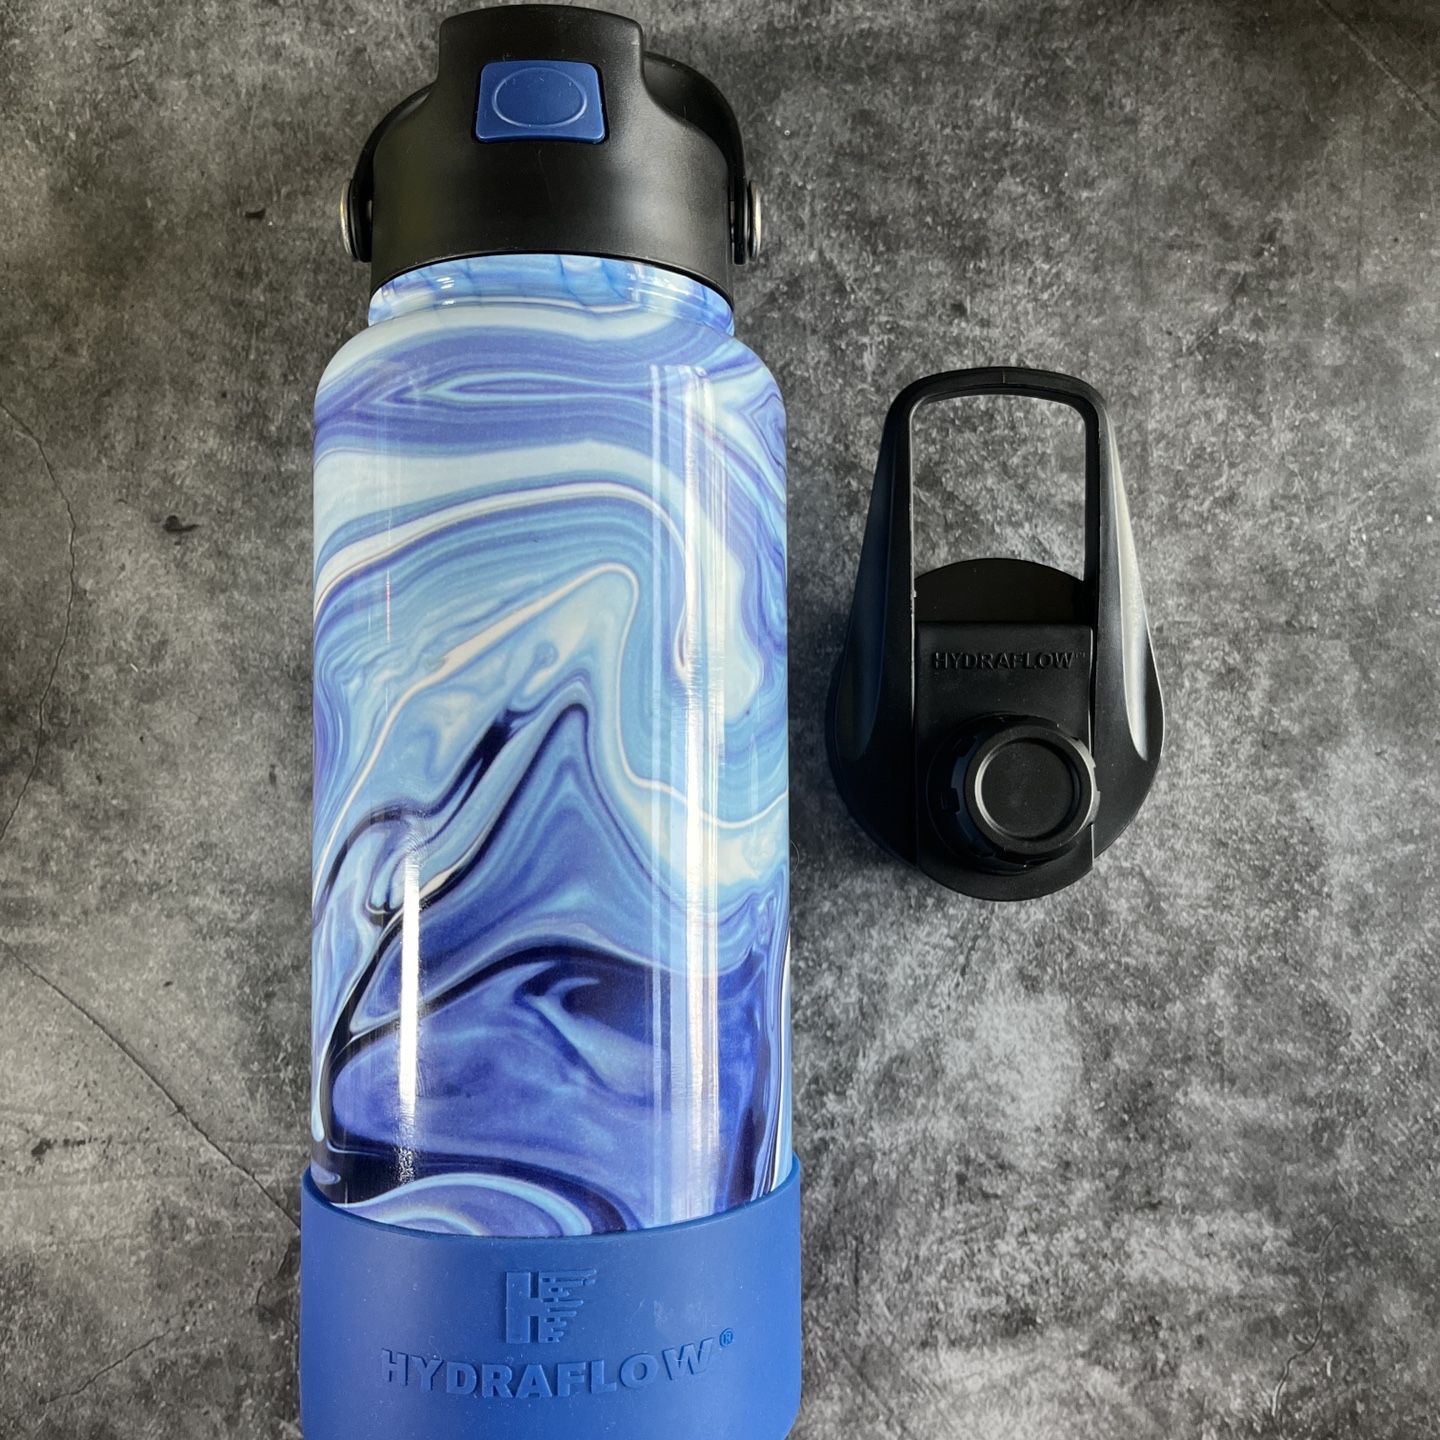 Hydraflow Water Bottle for Sale in Elgin, IL - OfferUp